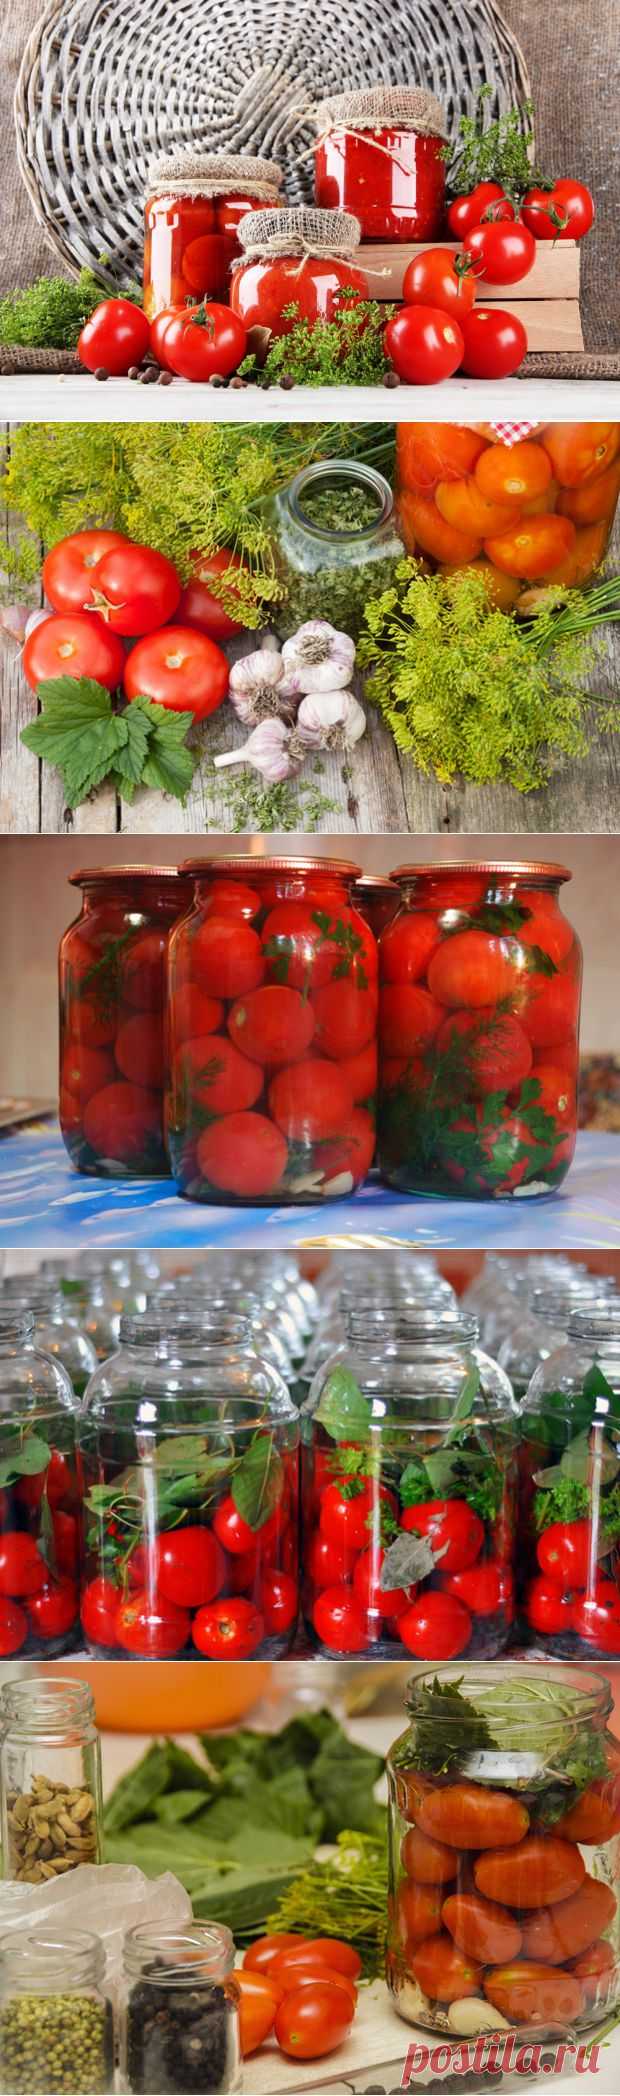 Как быстро и вкусно законсервировать помидоры | Интересные рецепты